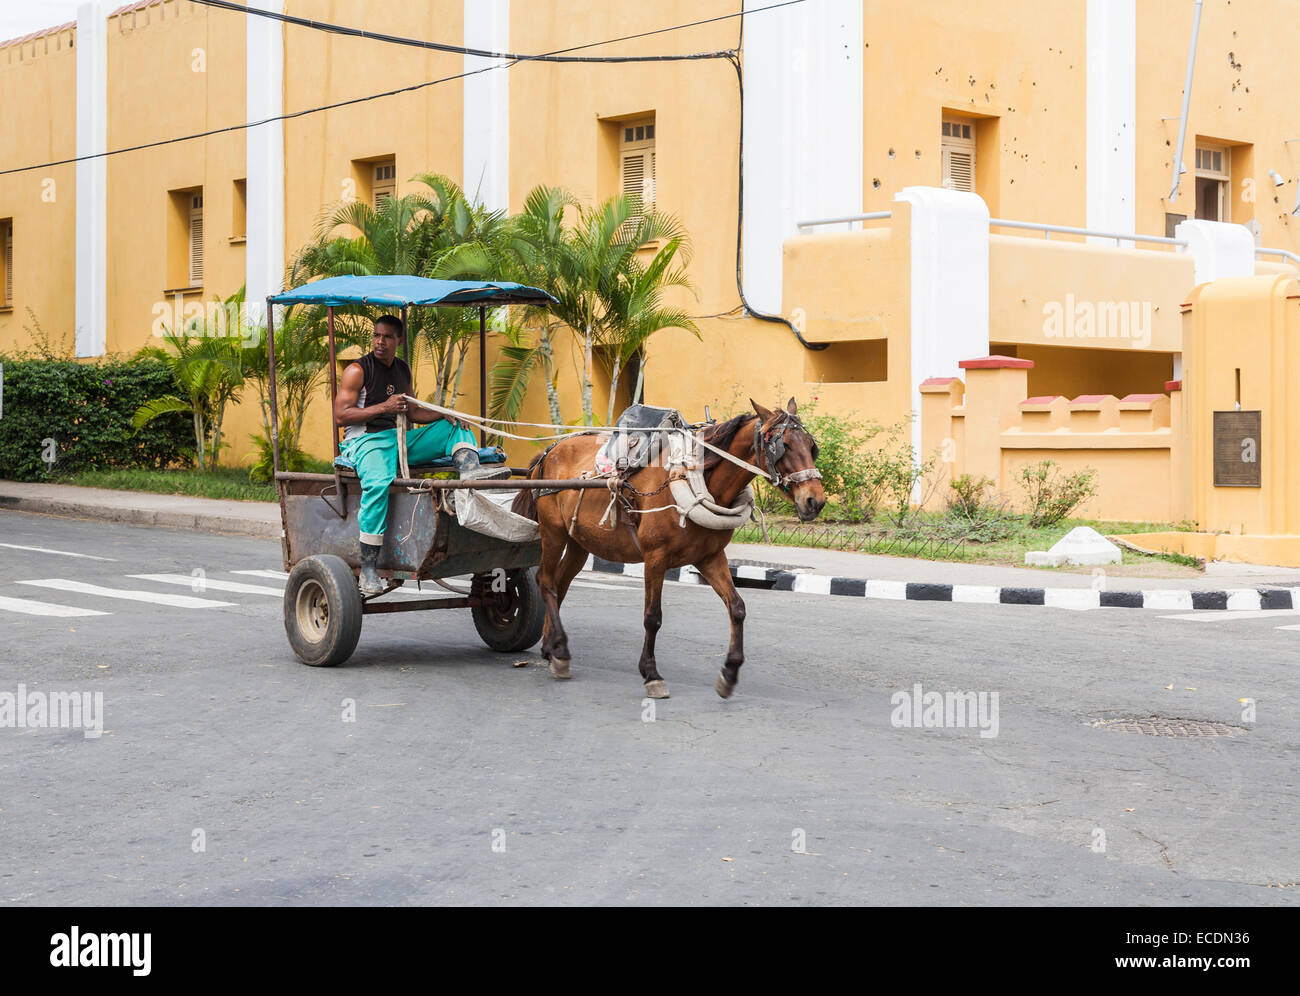 La conduite d'un homme cheval et panier par la caserne de Moncada, jaune avec des impacts de balles visibles dans les murs, Santiago de Cuba Banque D'Images